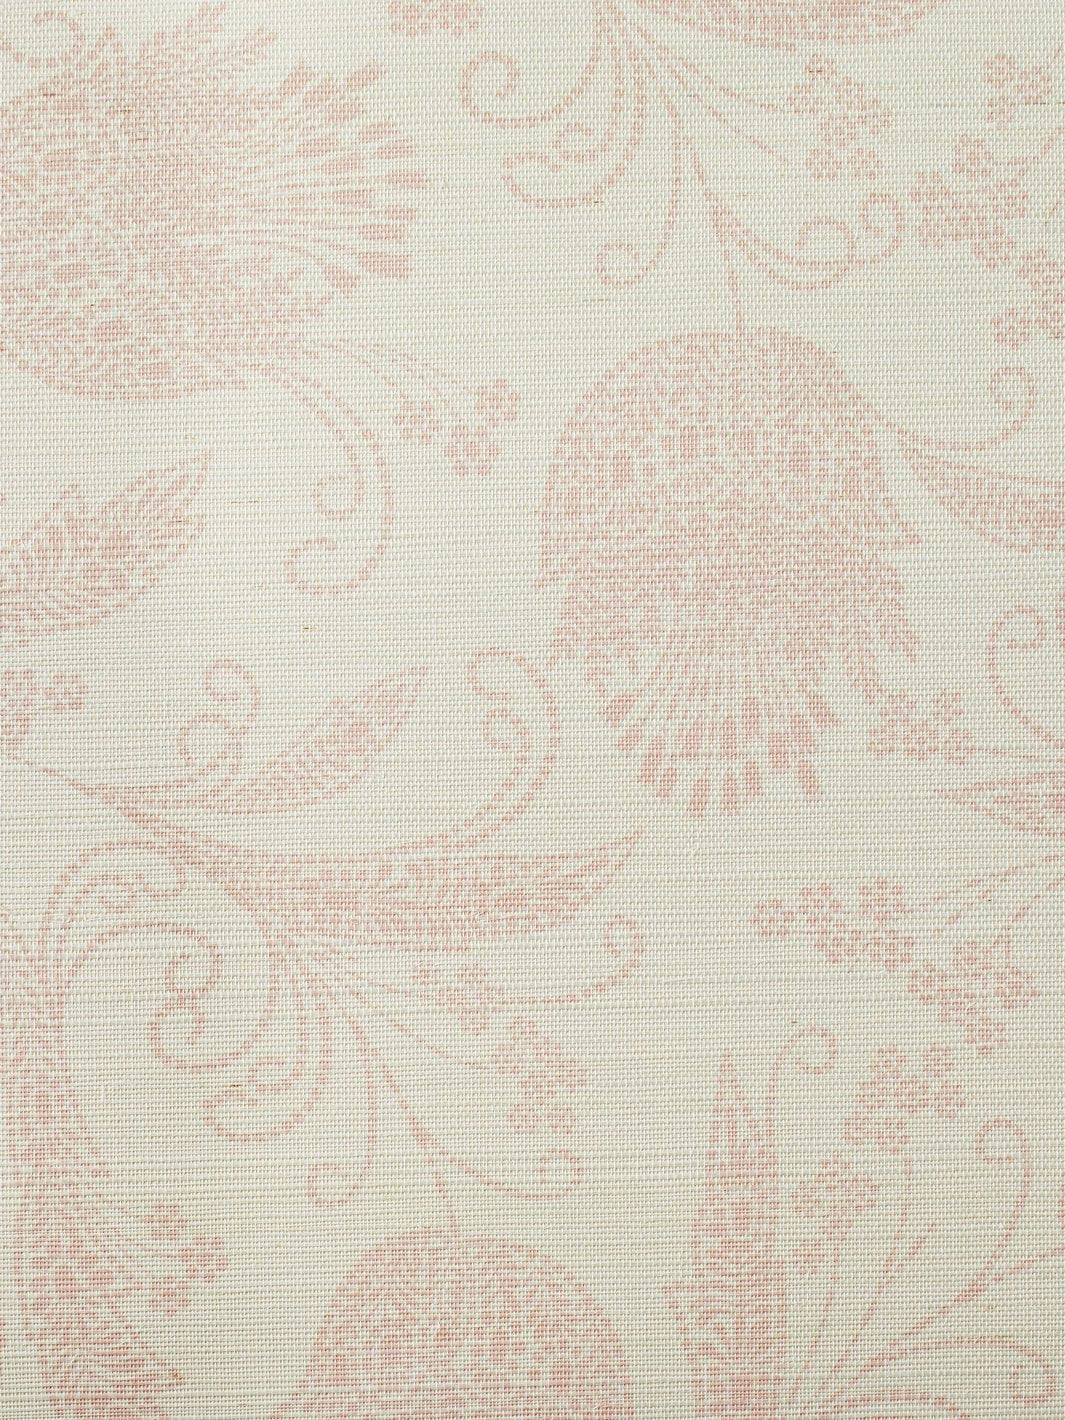 'Eleanor Rigby' Grasscloth' Wallpaper by Wallshoppe - Shell